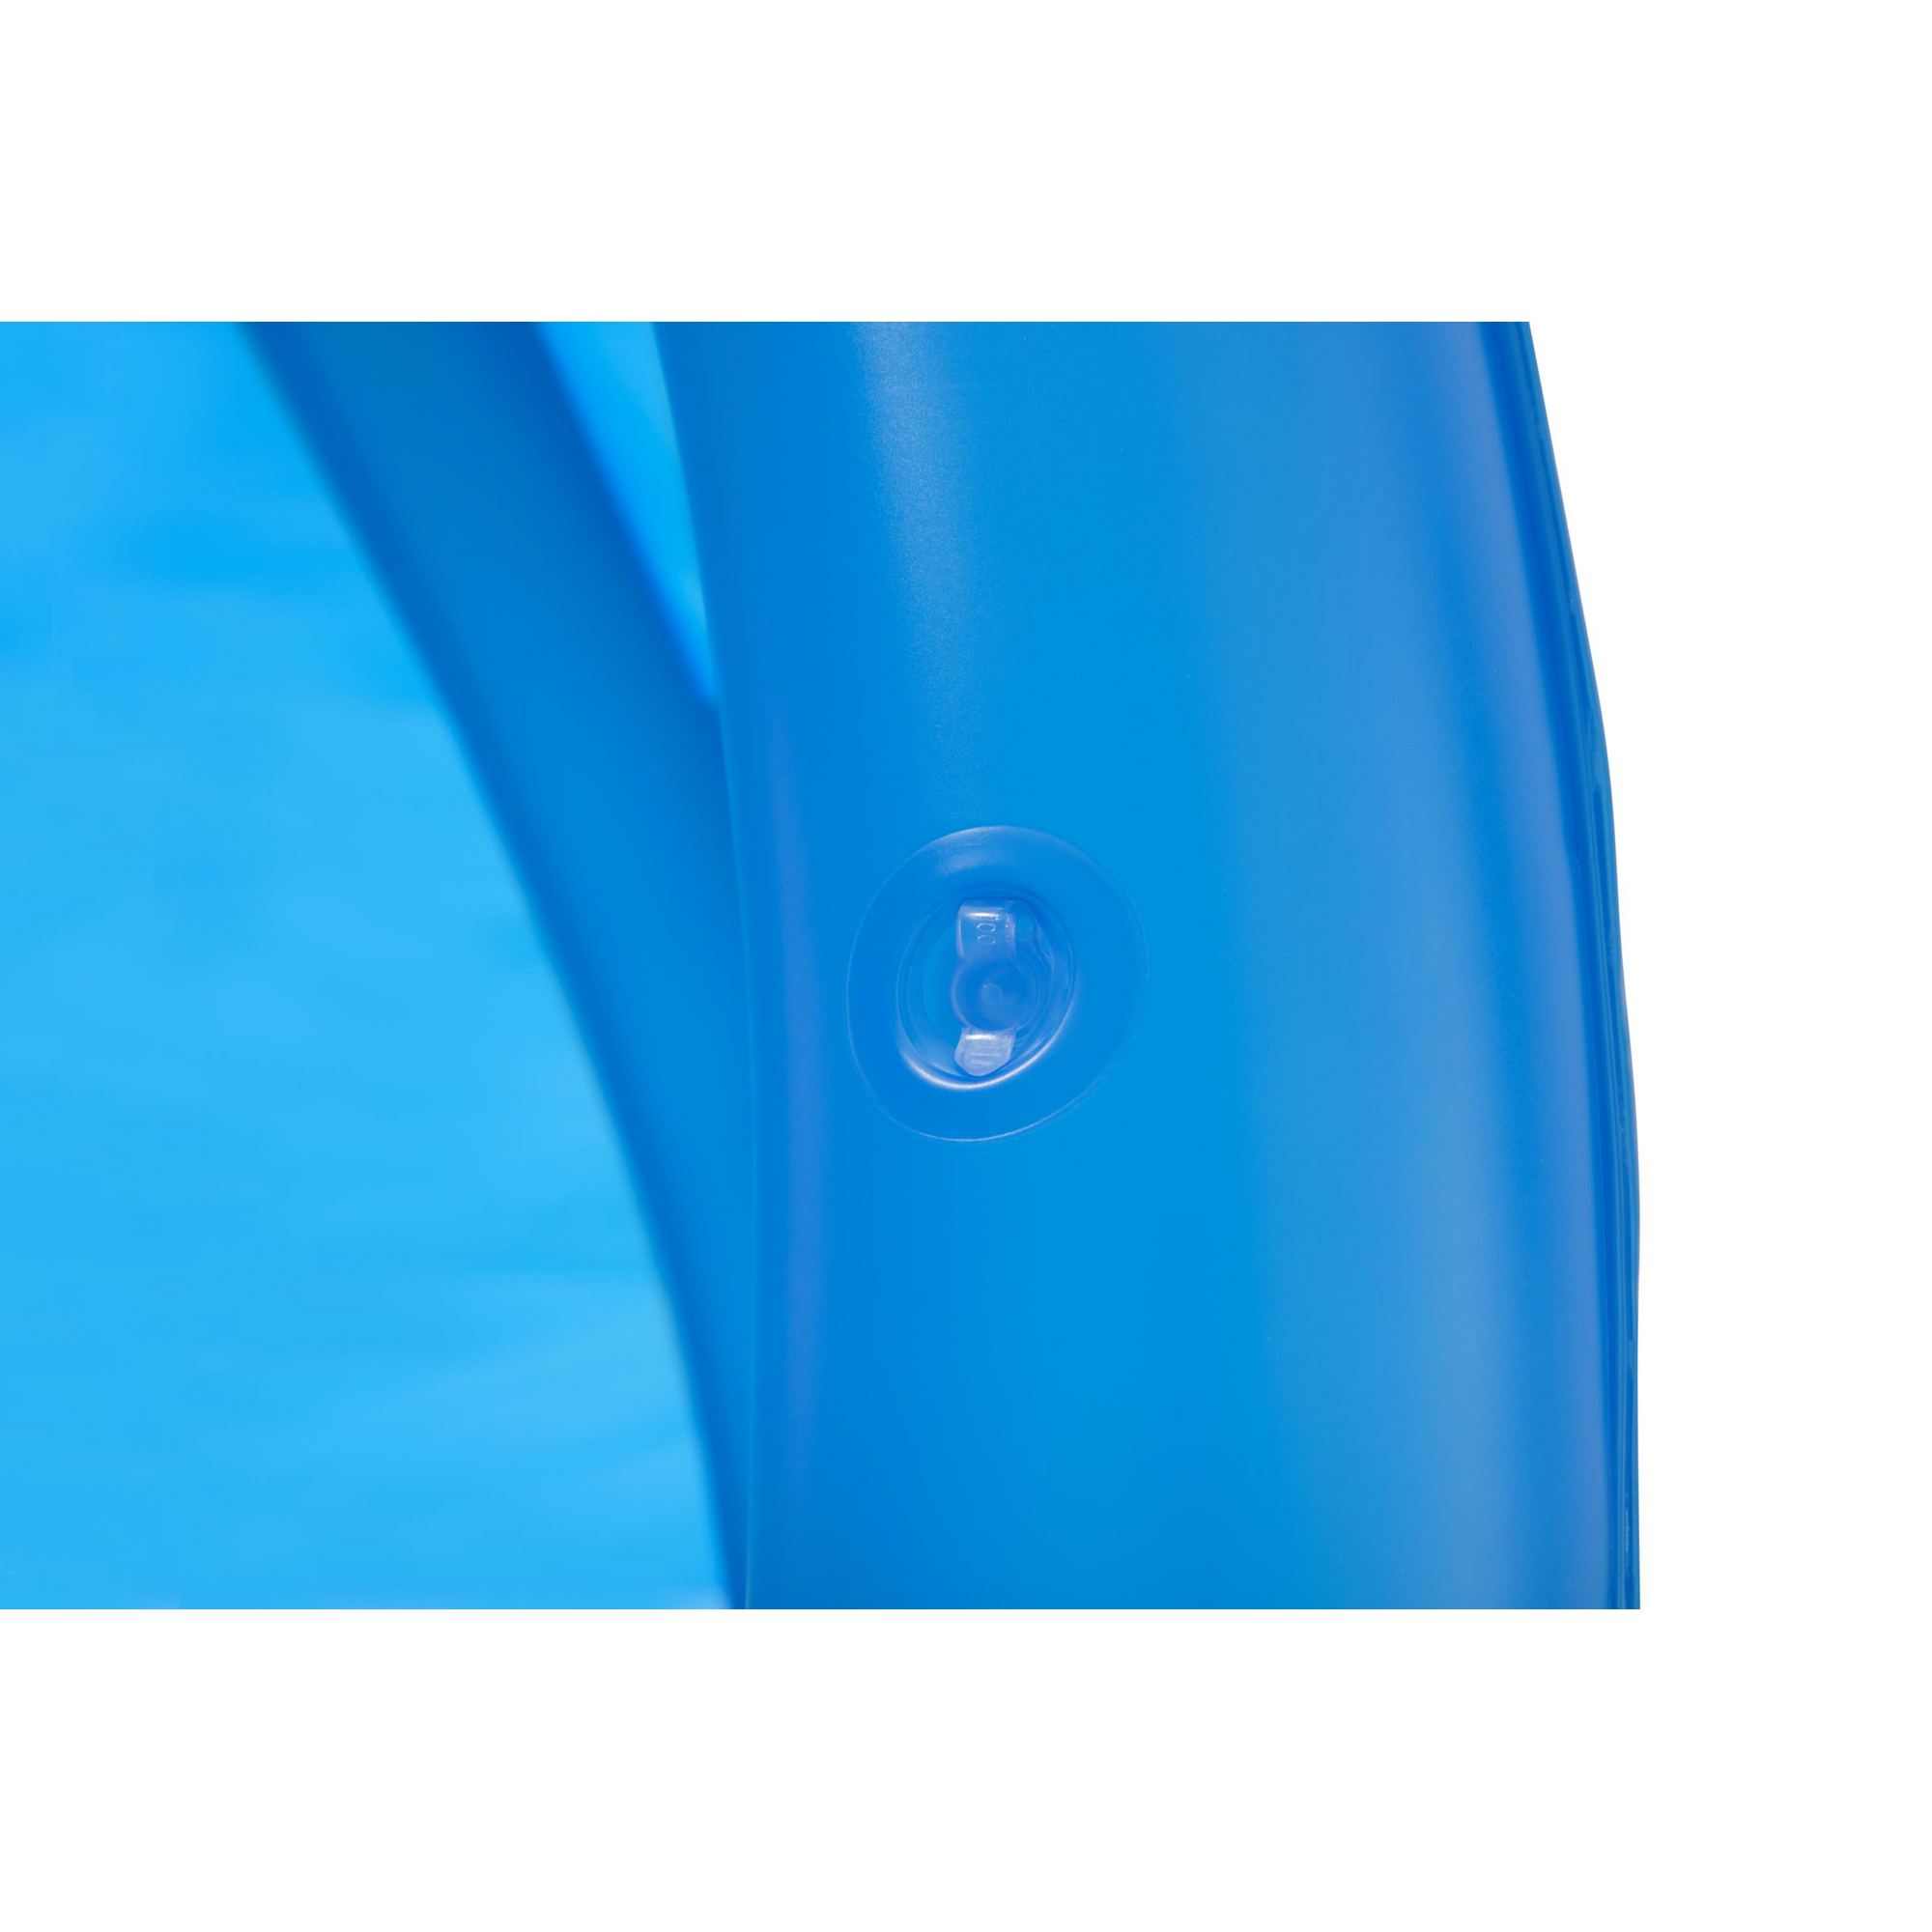 Planschbecken mit UV Careful™ Sonnenschutzdach 'Summer Days' blau Ø 241 x 140 cm 850 l + product picture